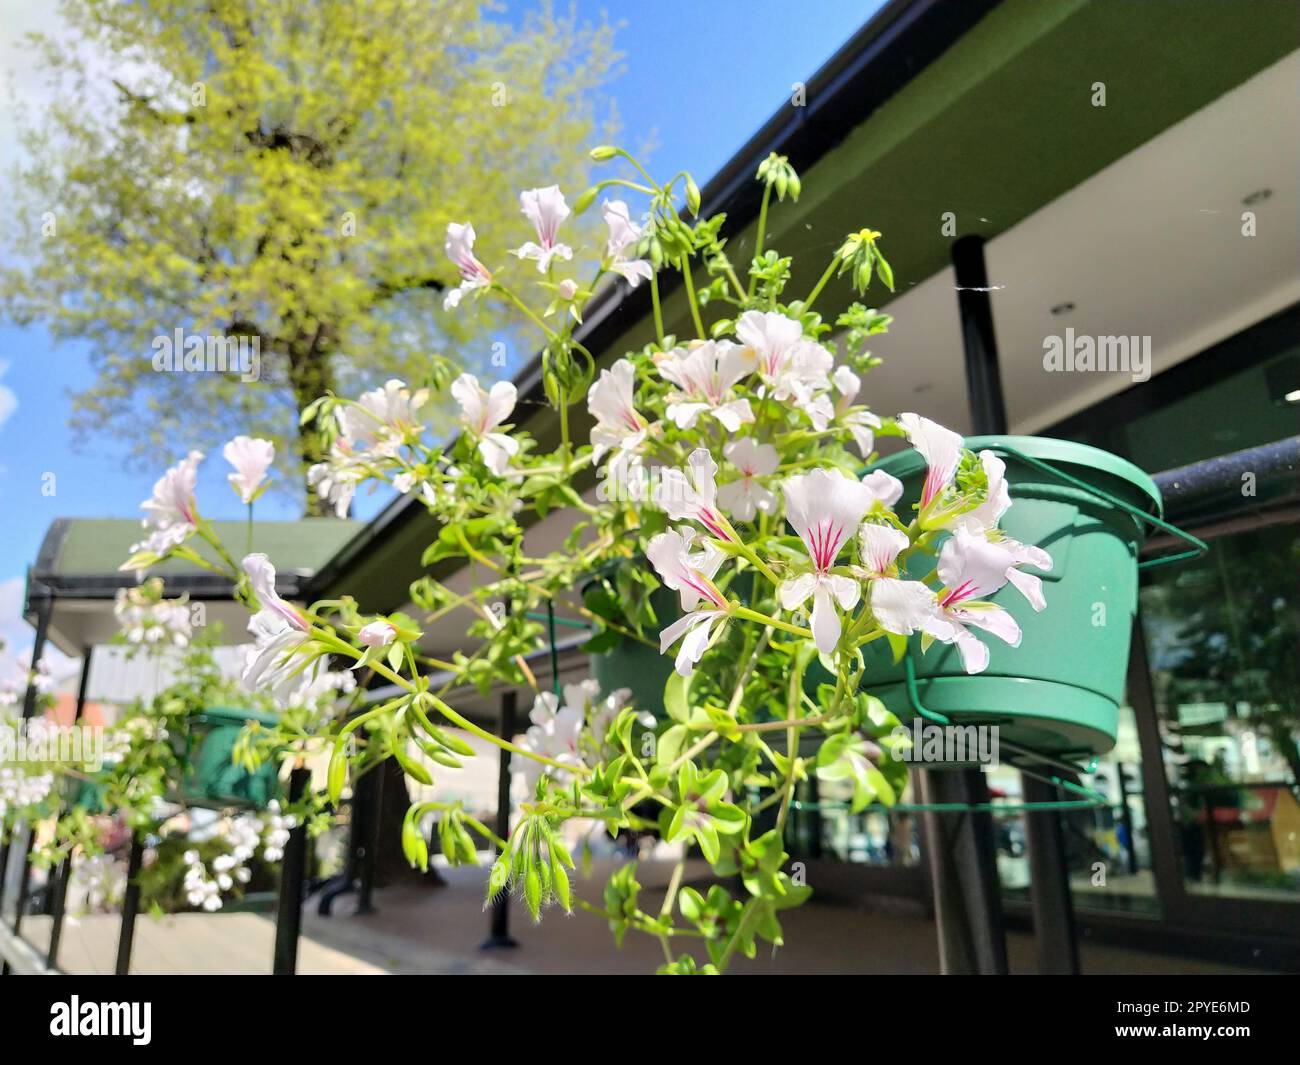 Pelargonium è un genere di piante della famiglia Geraniumaceae. Geranio ivy bianco con vene rosse su petali. Scatola di fiori. Decorazioni di balconi, finestre, facciate di case, strade, prati. Cranesbill. Foto Stock